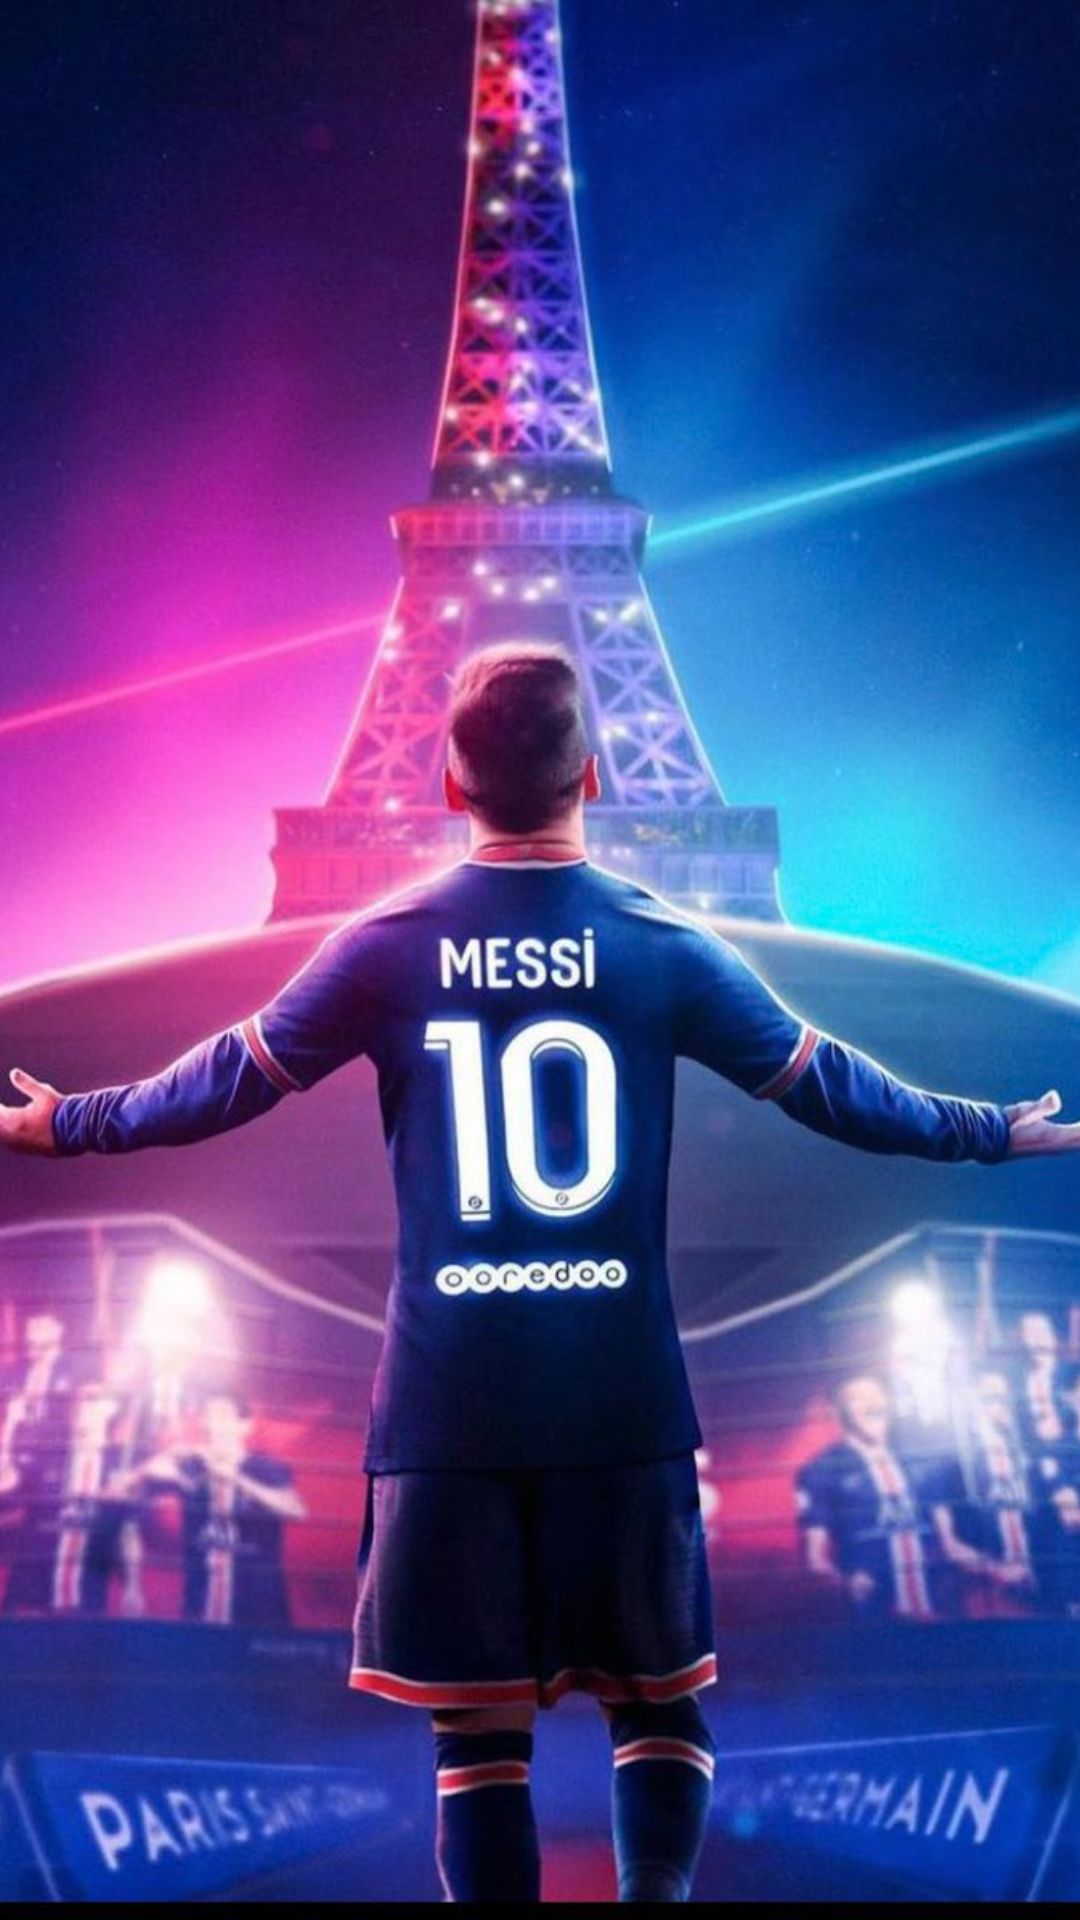 42+] Messi PSG 2021 Wallpapers - WallpaperSafari